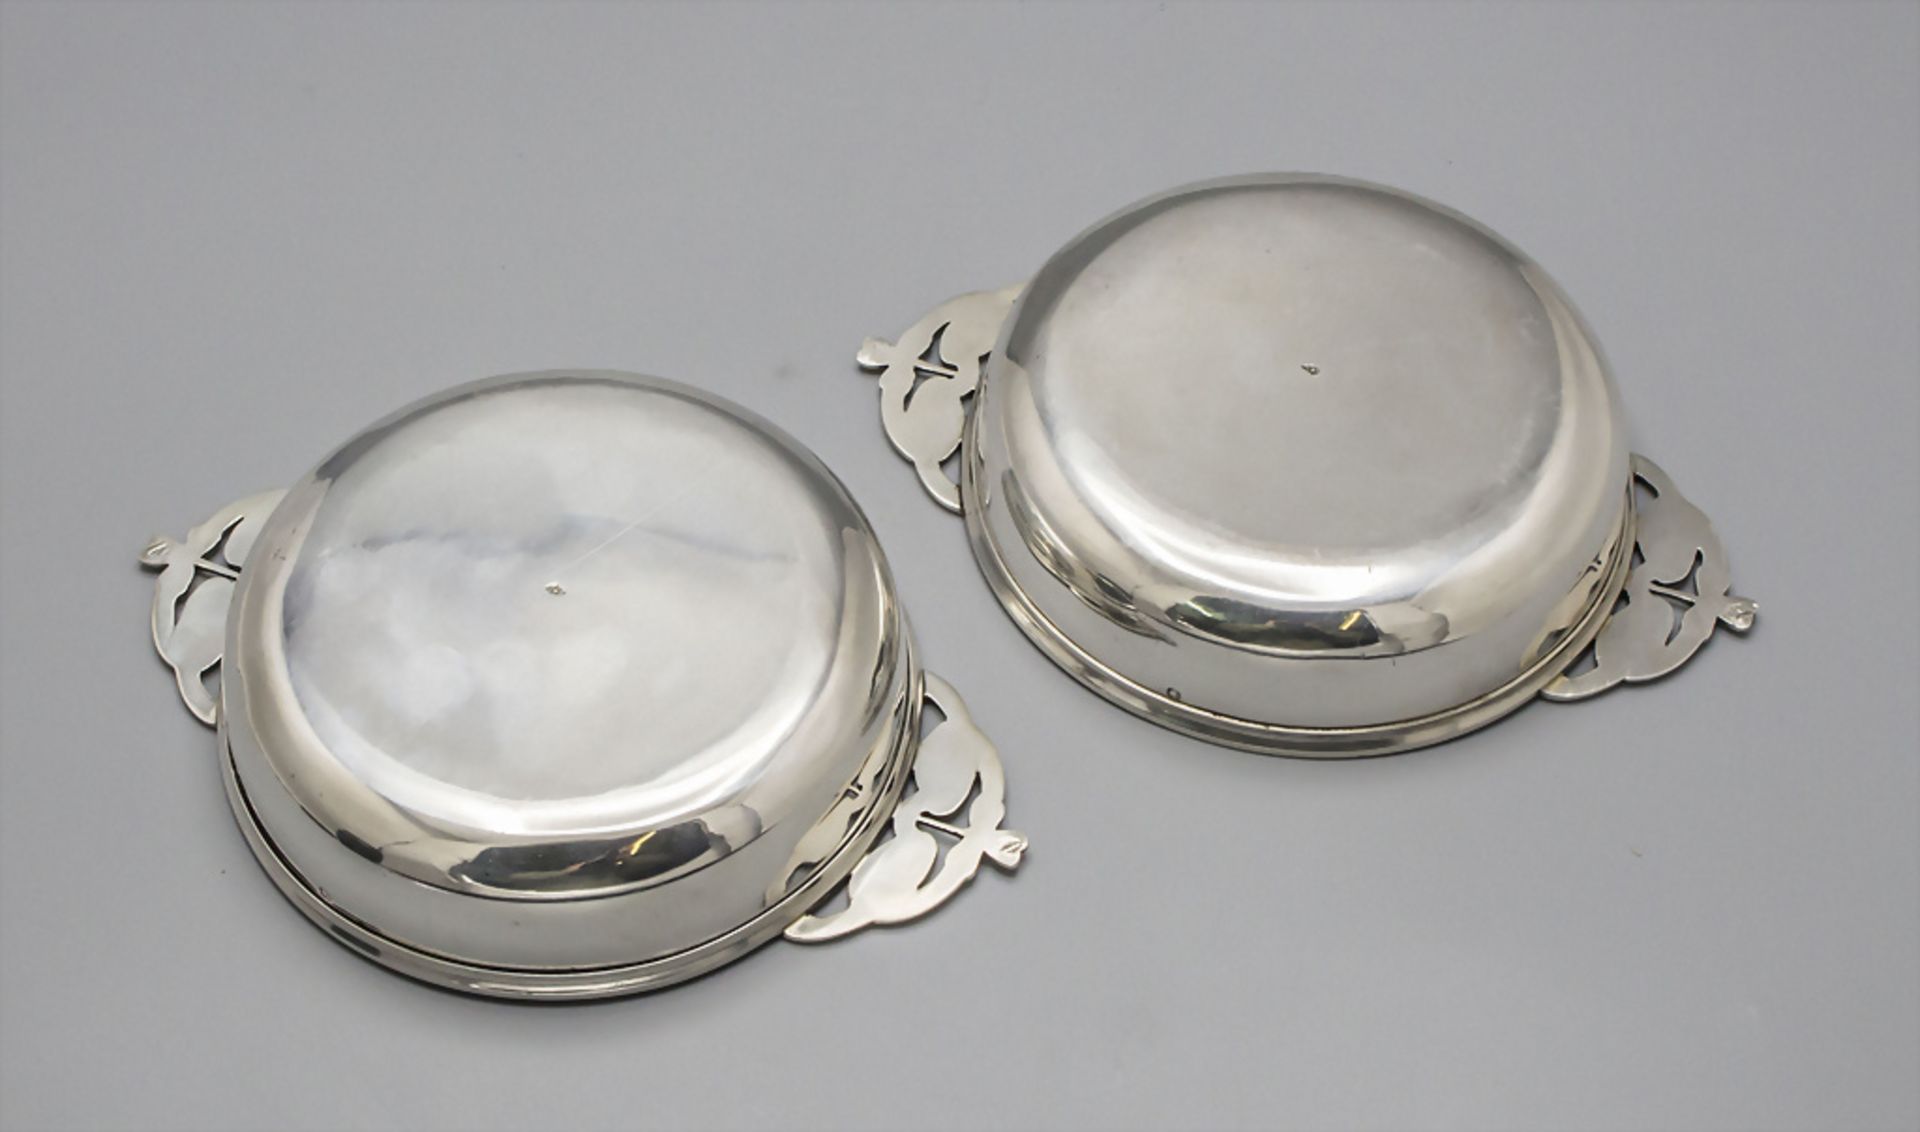 Paar Jugendstil Silberschalen mit Handhaben / Two Art Nouveau silver bowls with handles, ... - Image 3 of 7